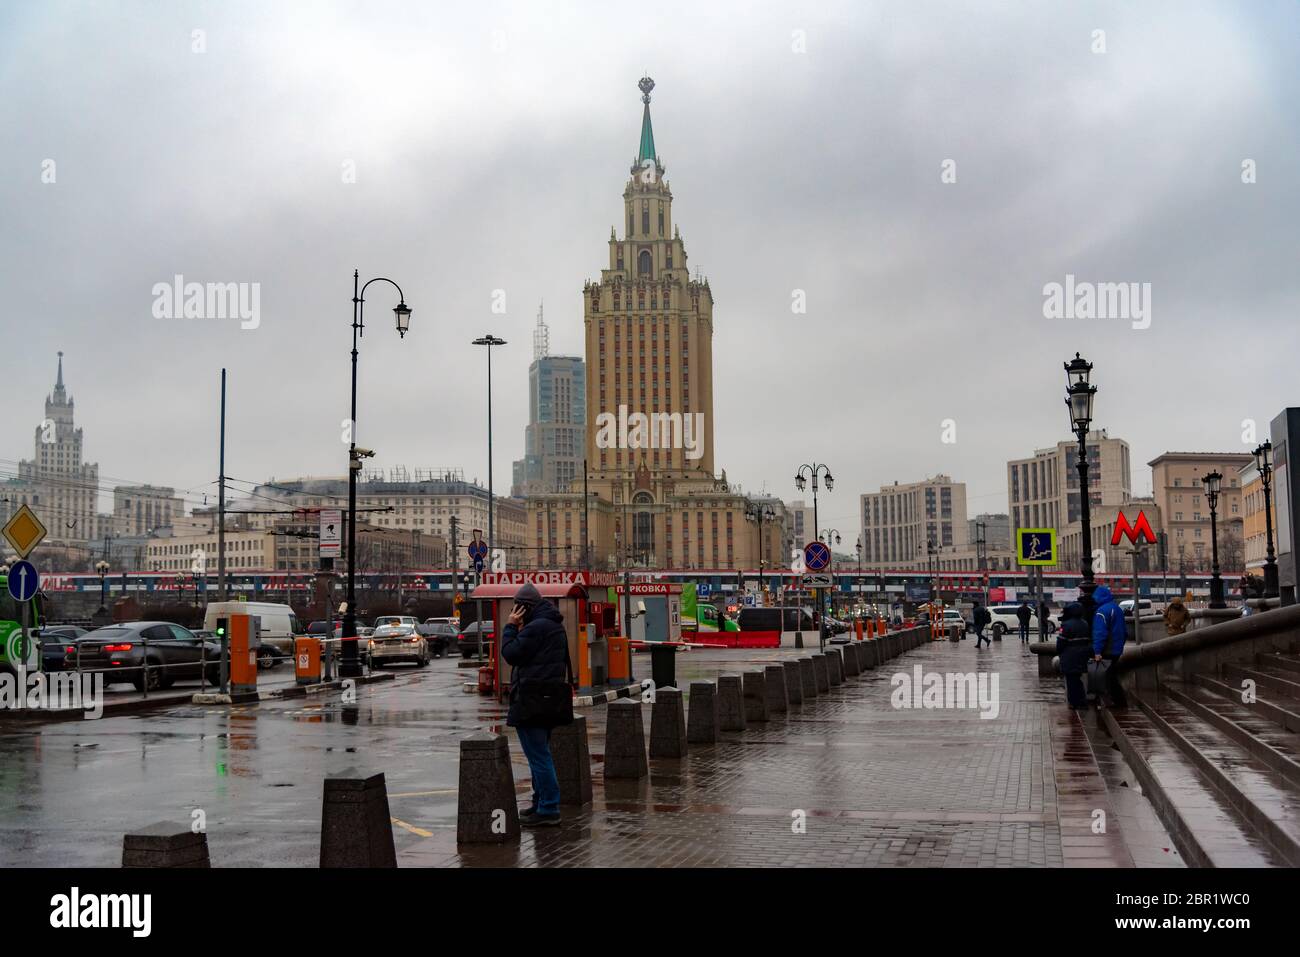 Moscou, Russie: Vue sur l'hôtel Leningradskaya depuis la gare de Leningradsky. Moscou, Russie. Banque D'Images